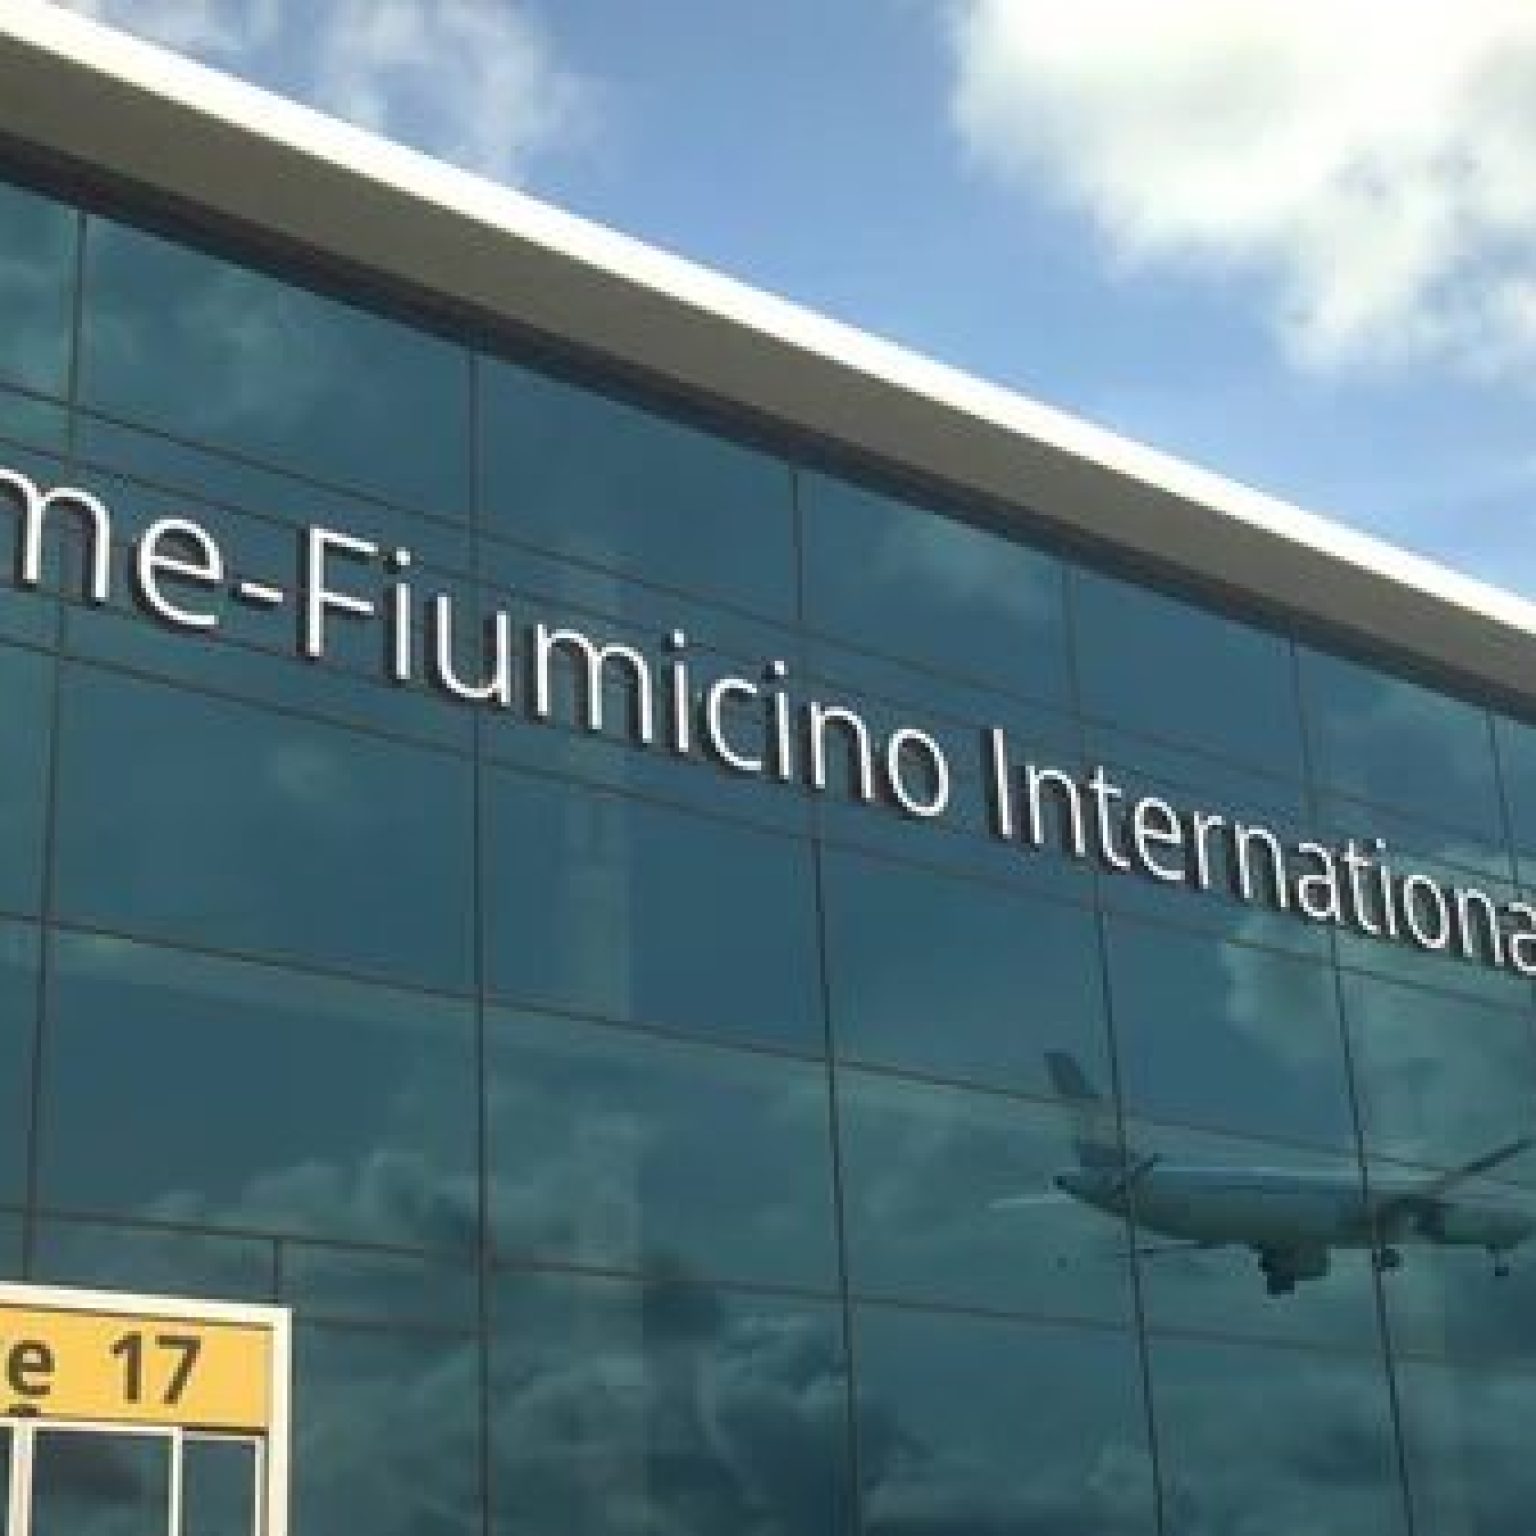 Как добраться до аэропорта Рима (Фьюмичино) из центра